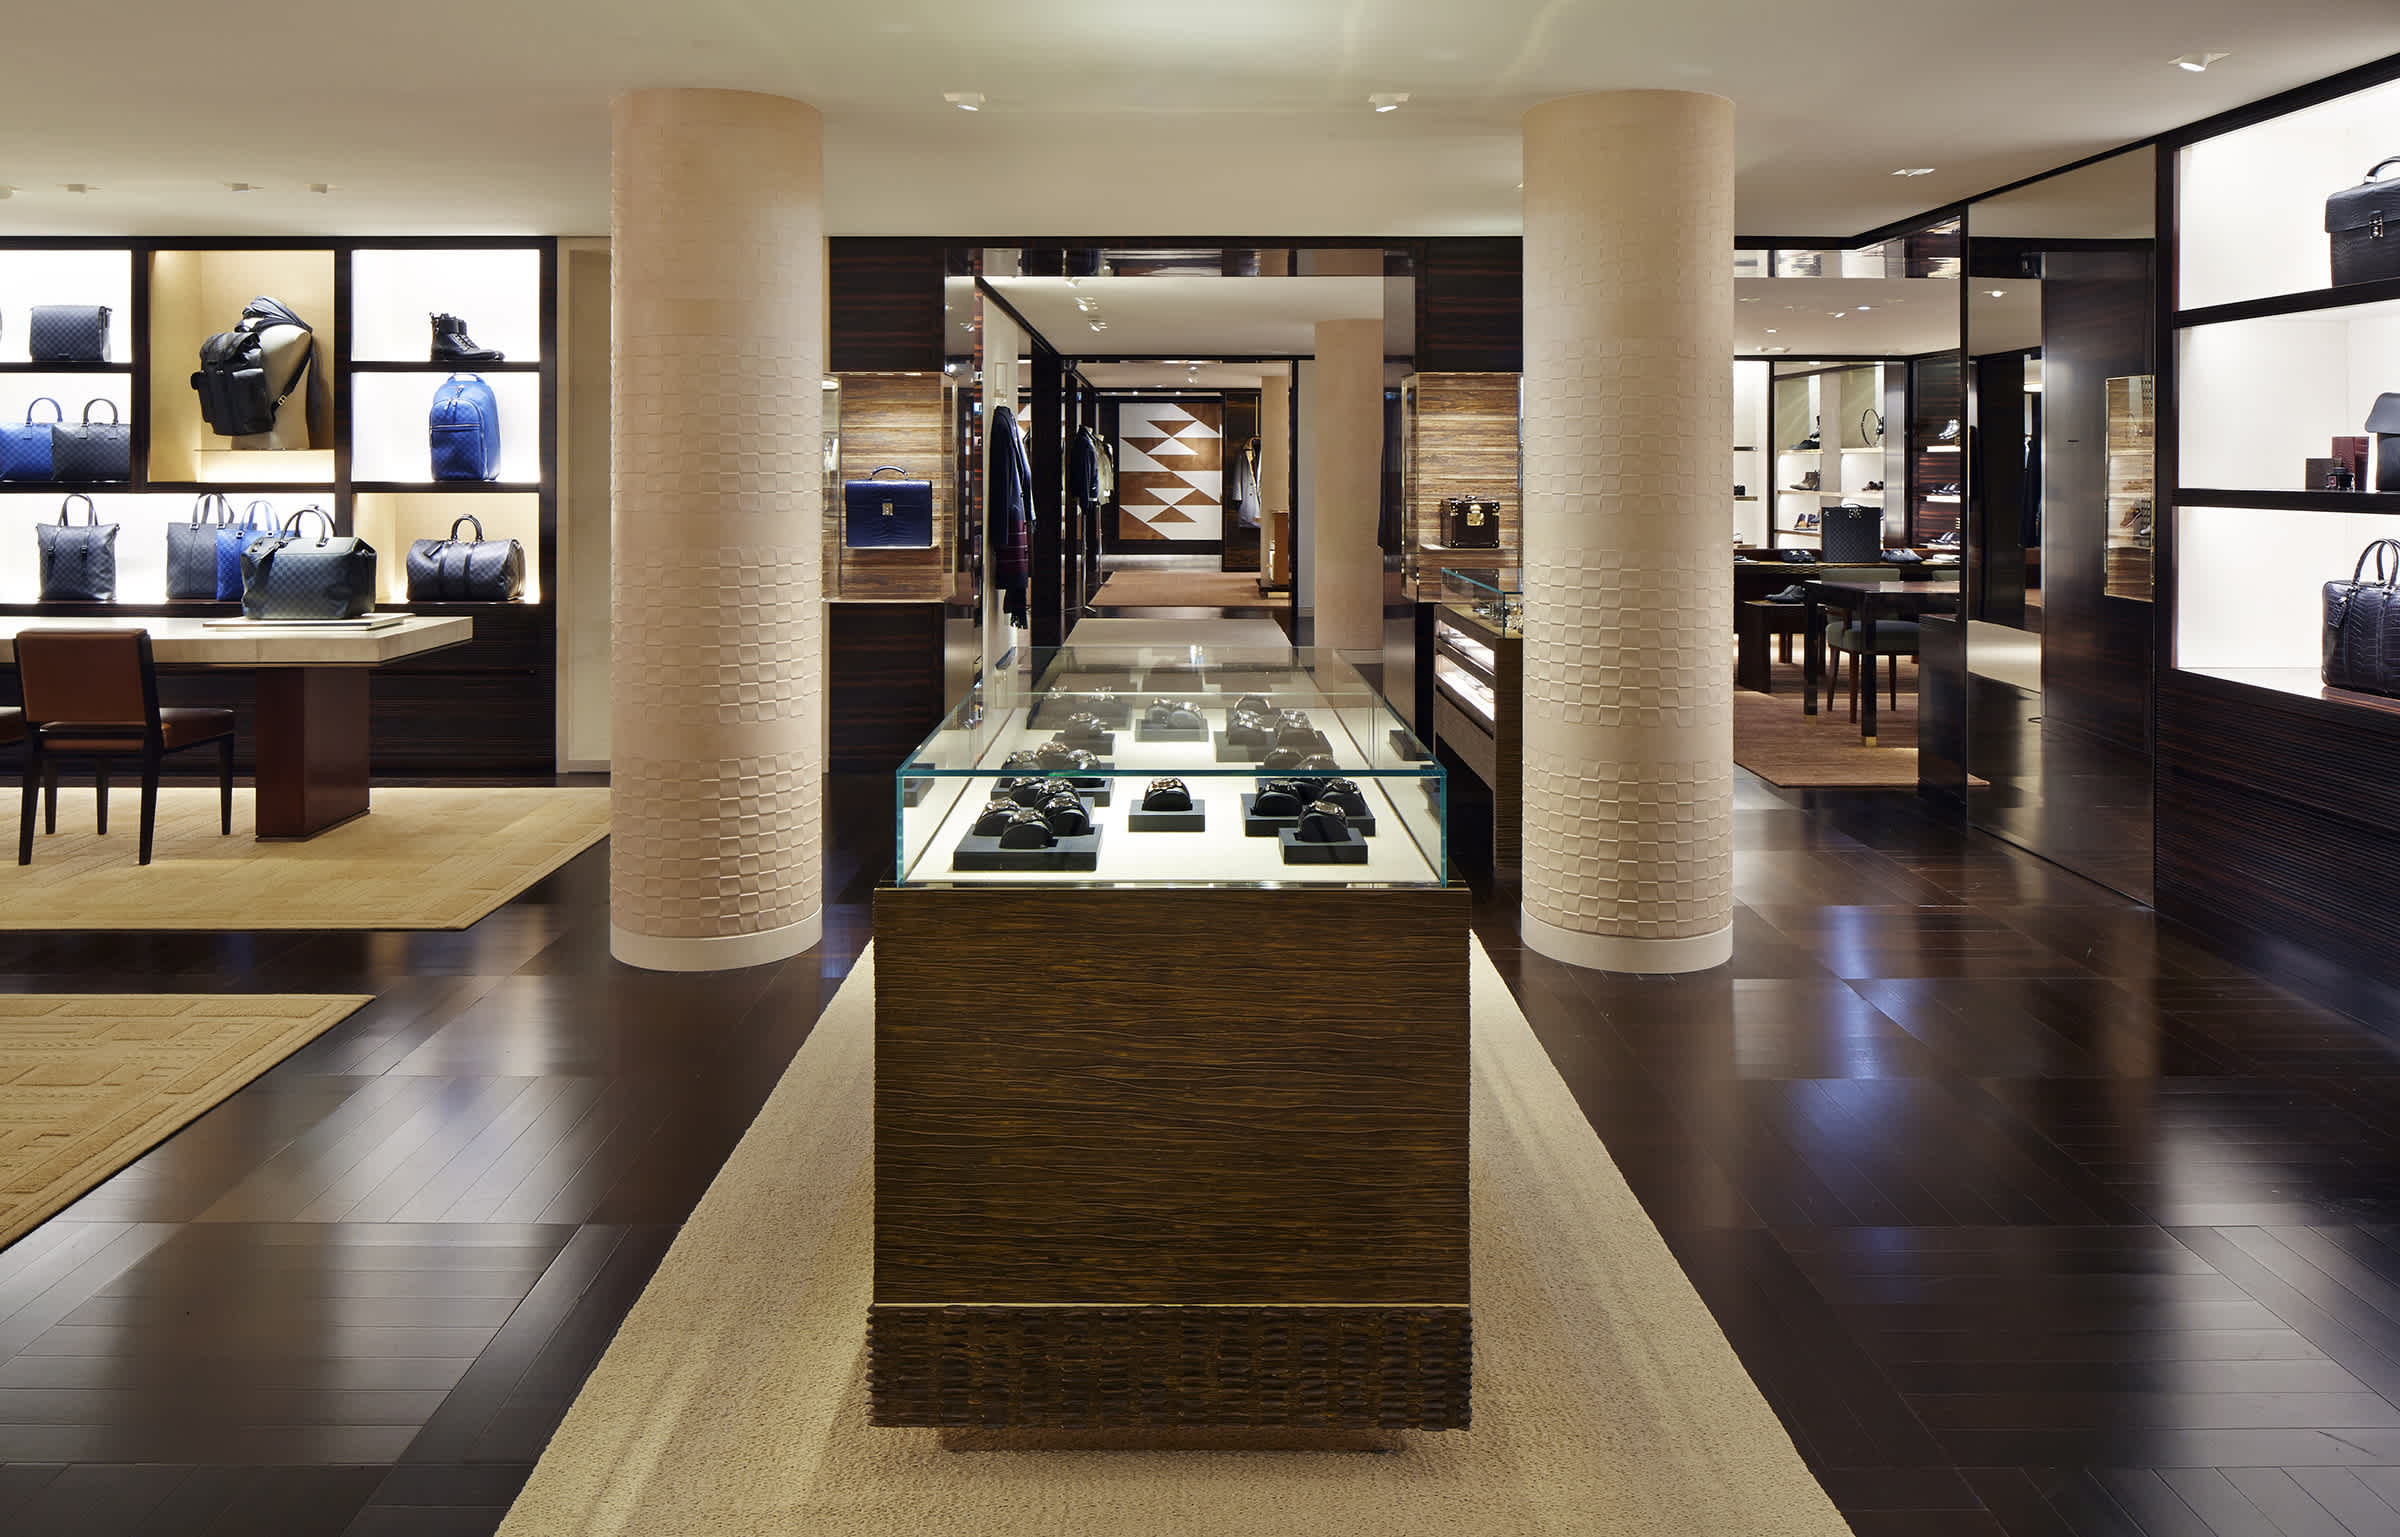 Louis Vuitton Boutique on Avenue Montaigne in Paris, France on